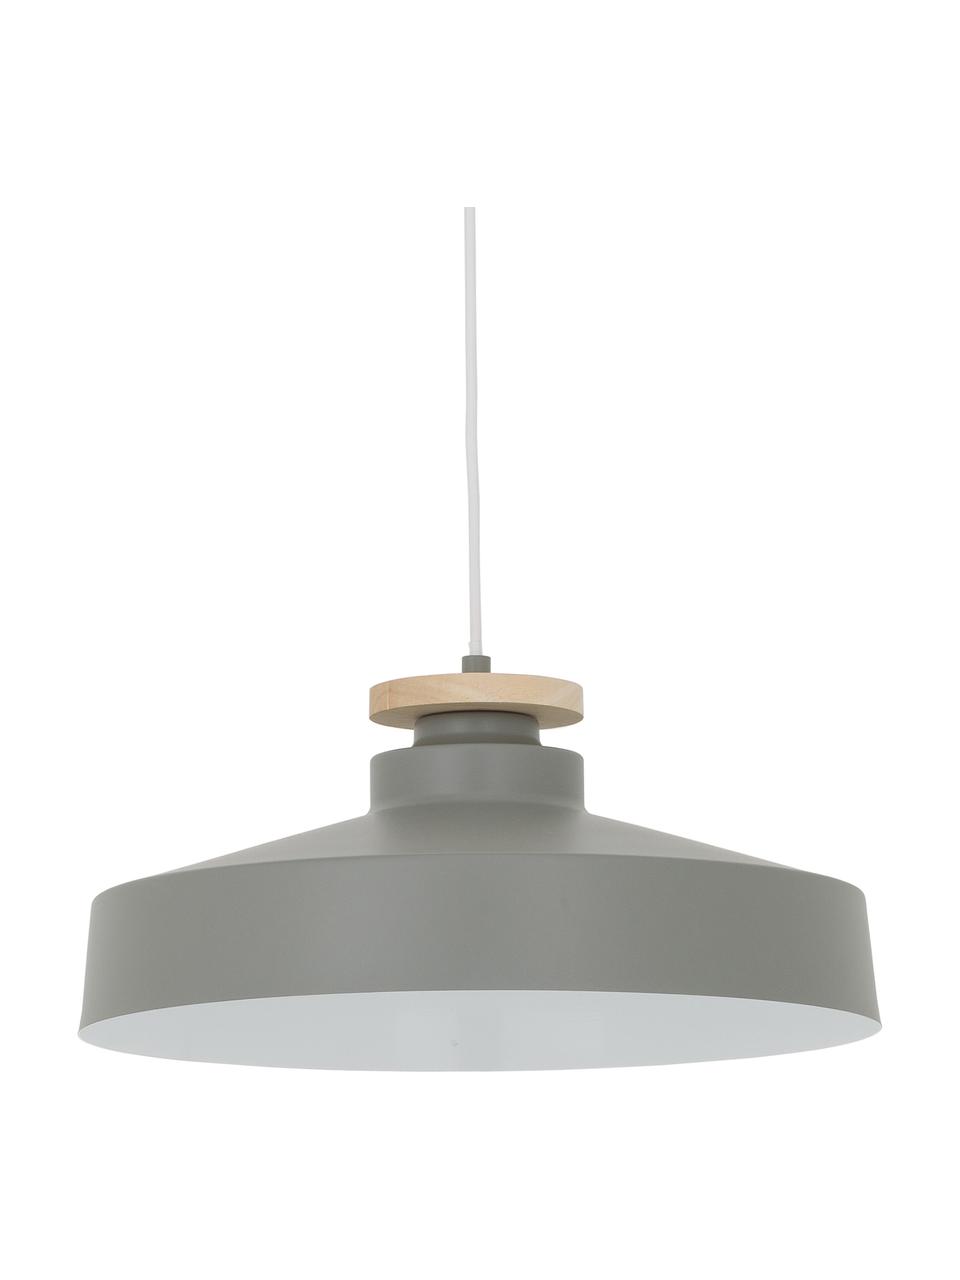 Scandi hanglamp Malm, Lampenkap: metaal, Decoratie: hout, Baldakijn: metaal, Grijs, Ø 40 x H 20 cm